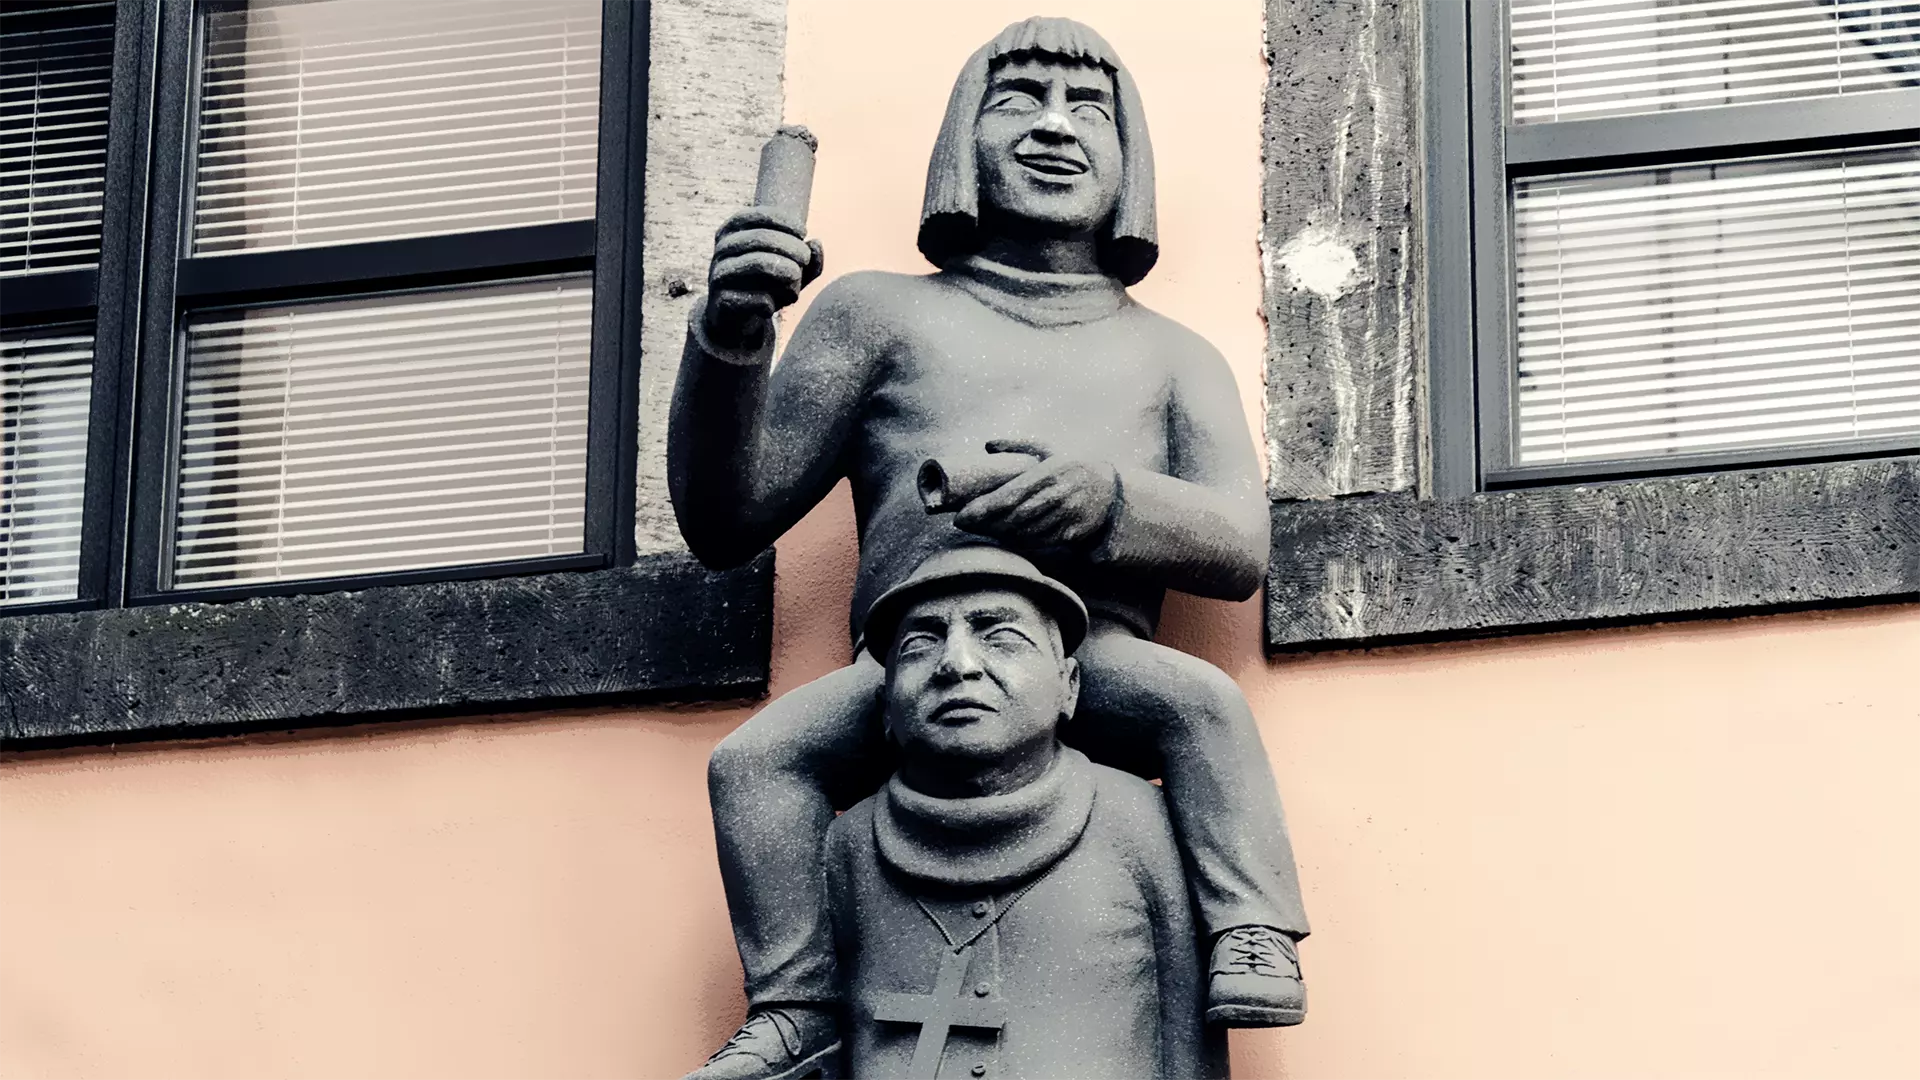 Skulptur am Brauhaus Päffgen